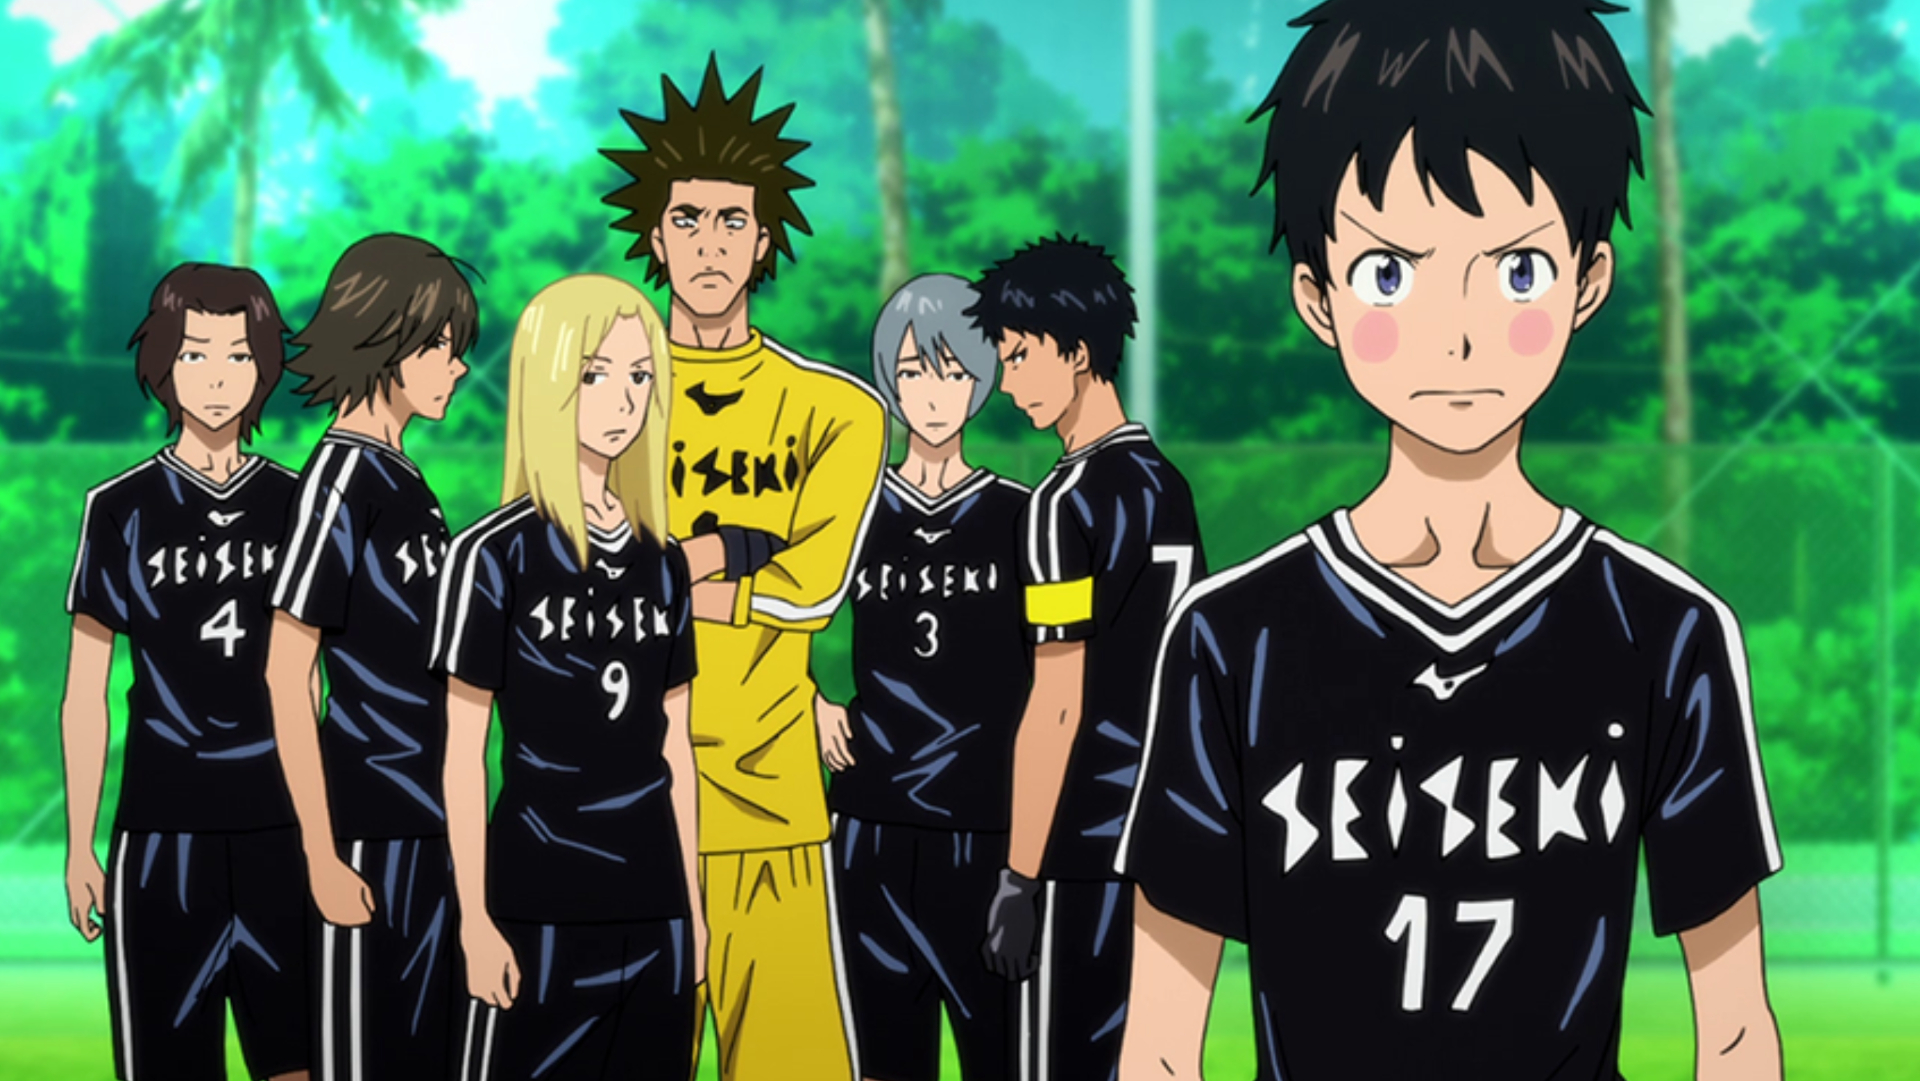 Tsukushi e o resto do elenco principal em seus uniformes de futebol.